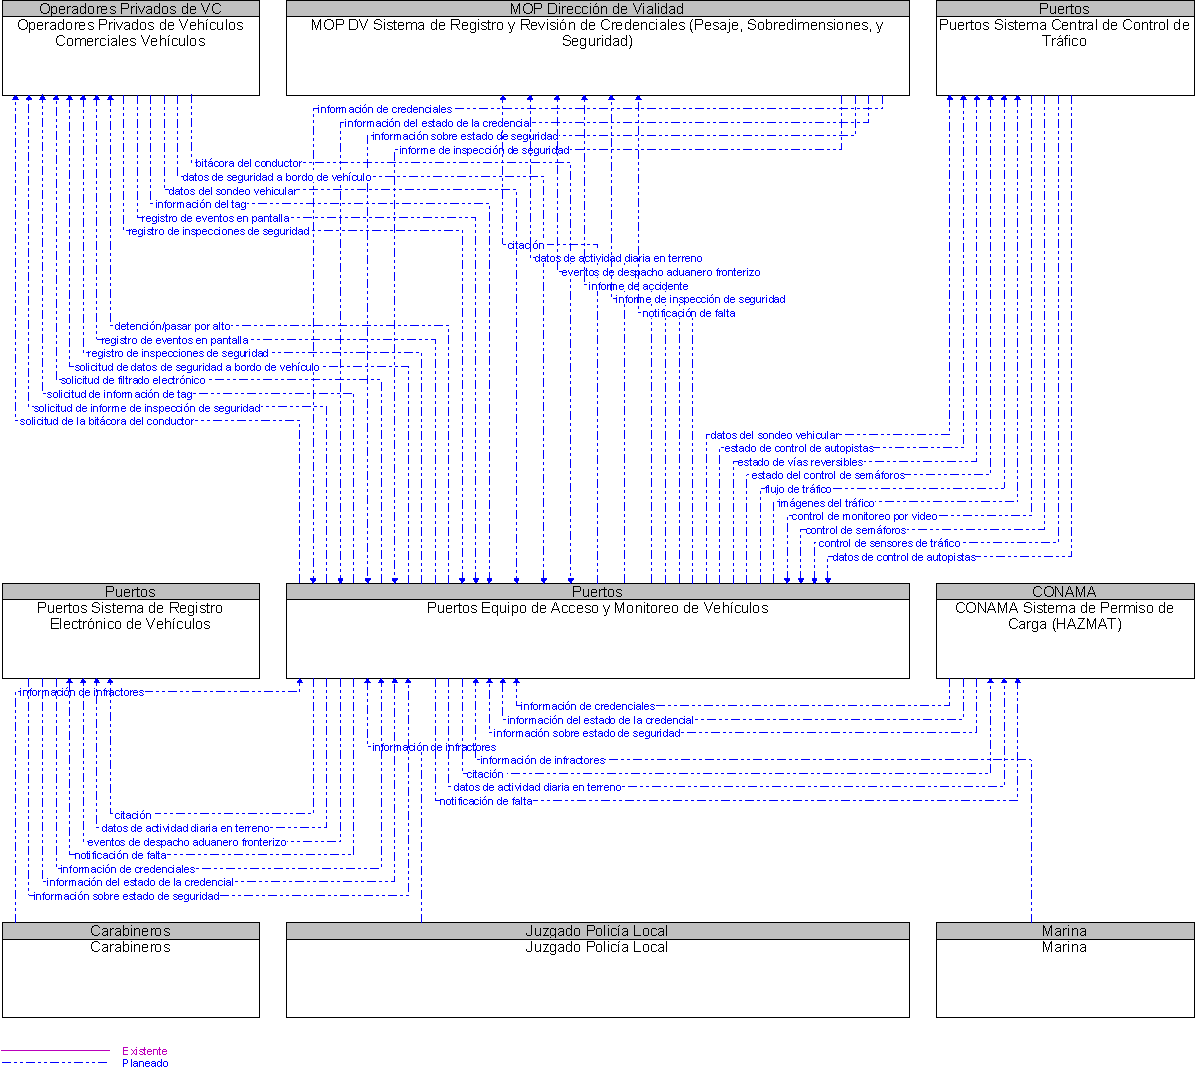 Diagrama Del Contexto por Puertos Equipo de Acceso y Monitoreo de Vehculos